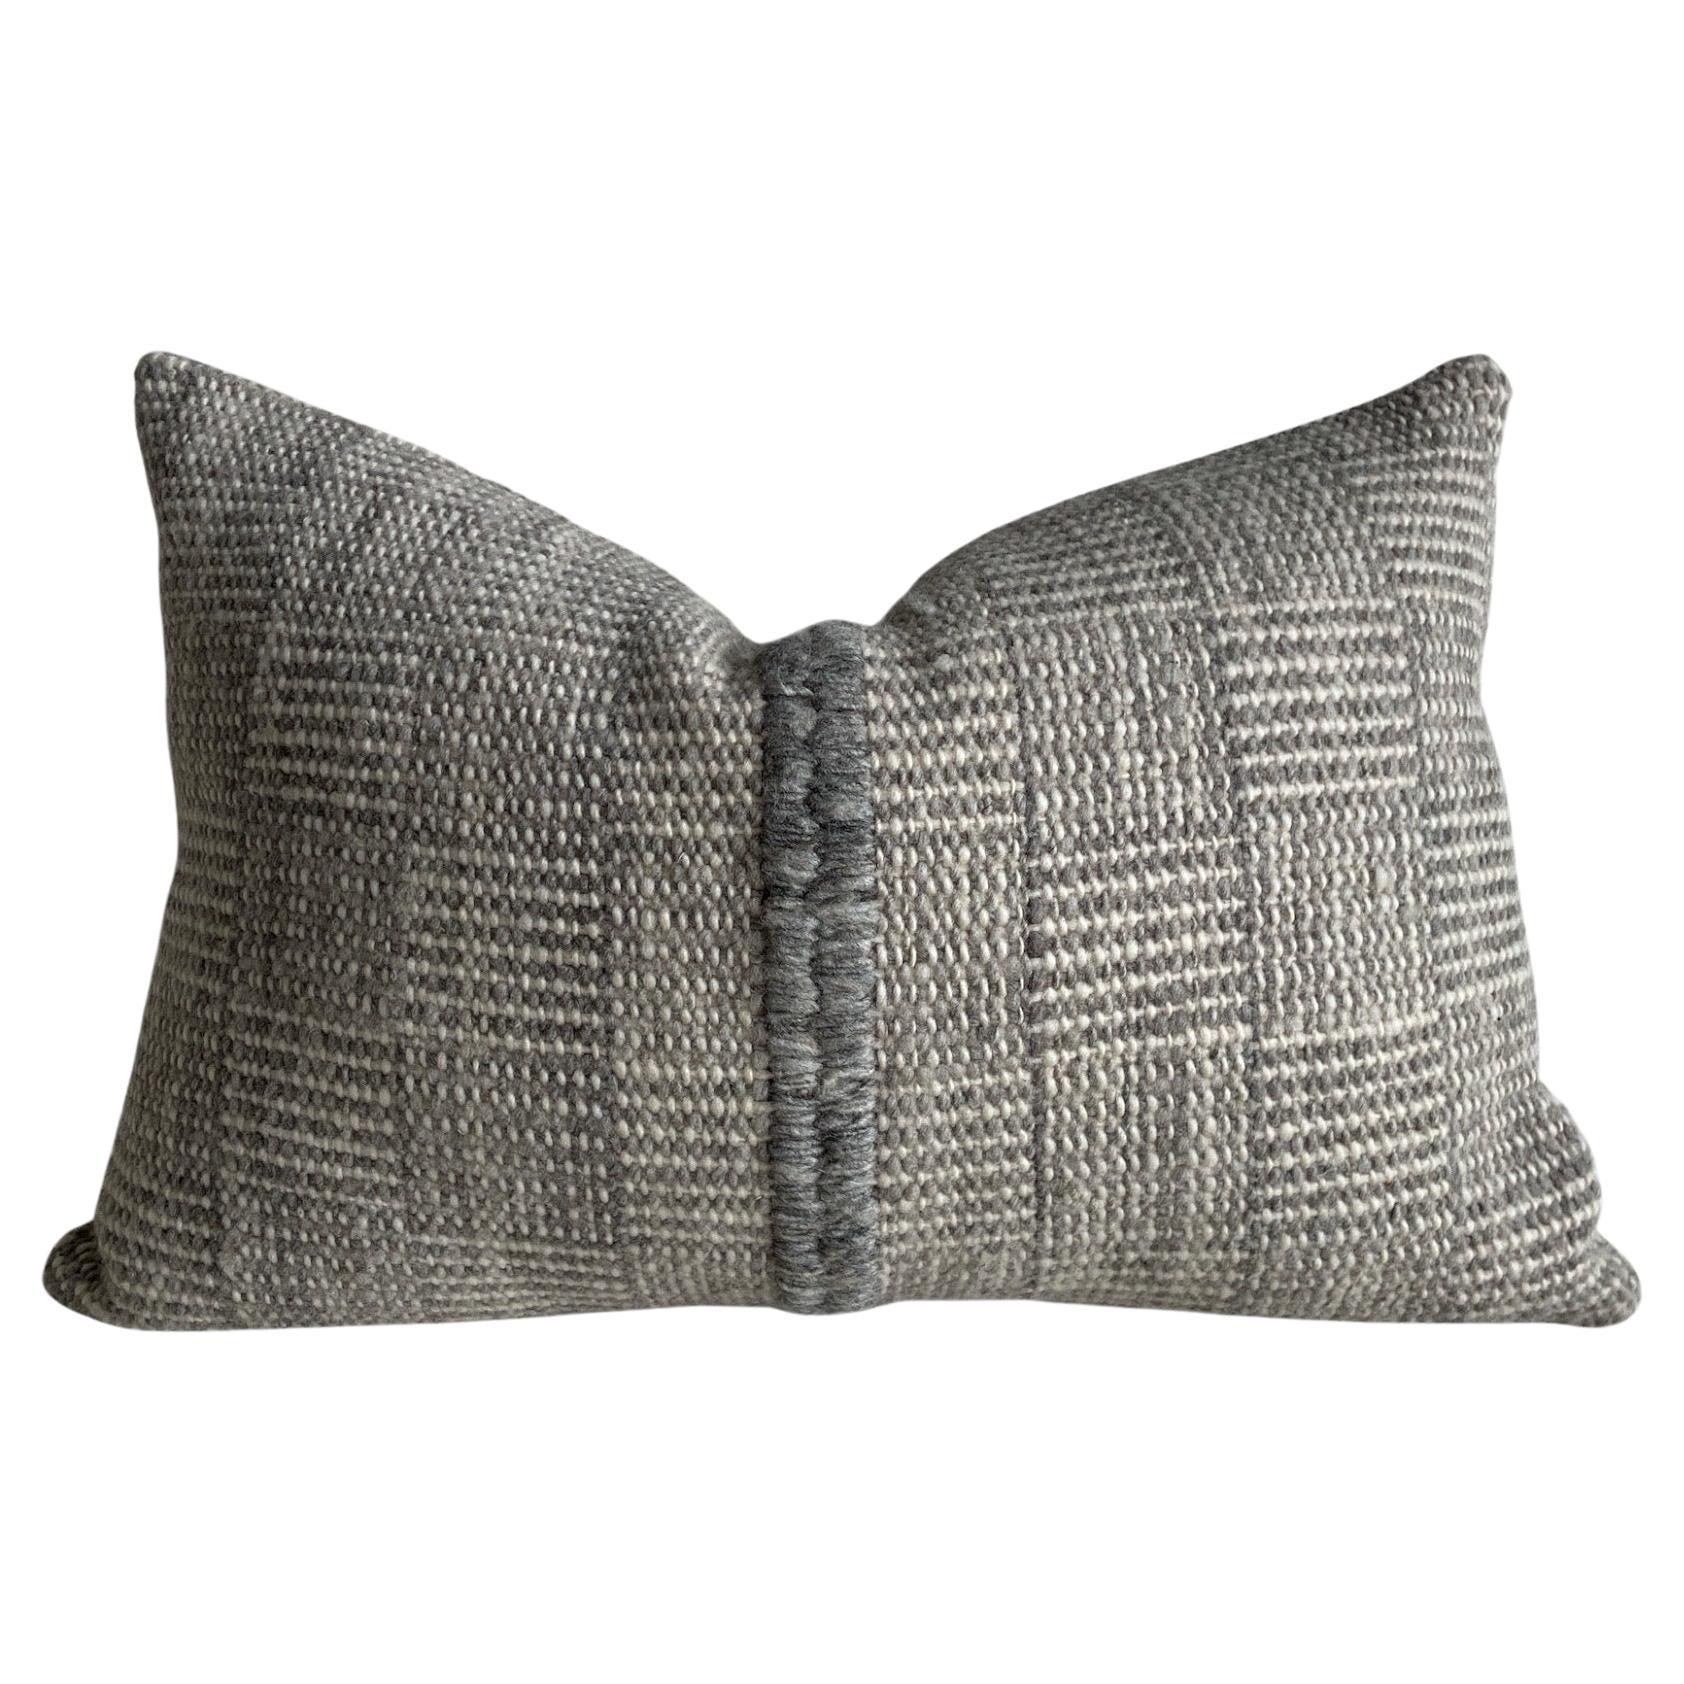 Vinn Organic Wool Lumbar Pillow with Down Insert